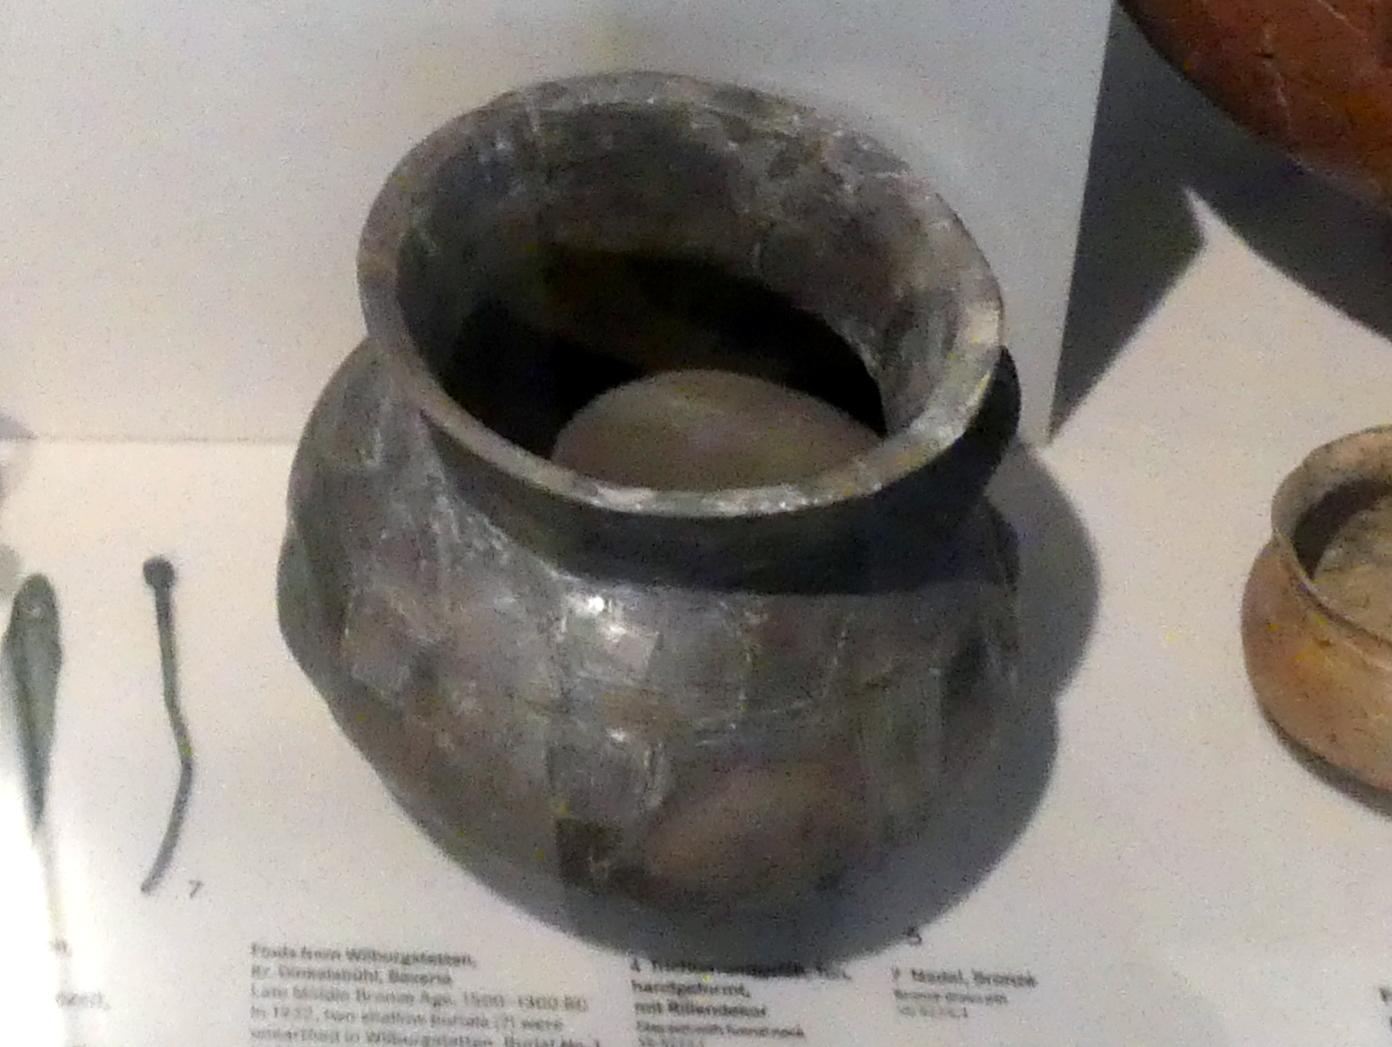 Zylinderhalstopf, Mittlere Bronzezeit C, 1500 - 1300 v. Chr., 1500 - 1300 v. Chr.